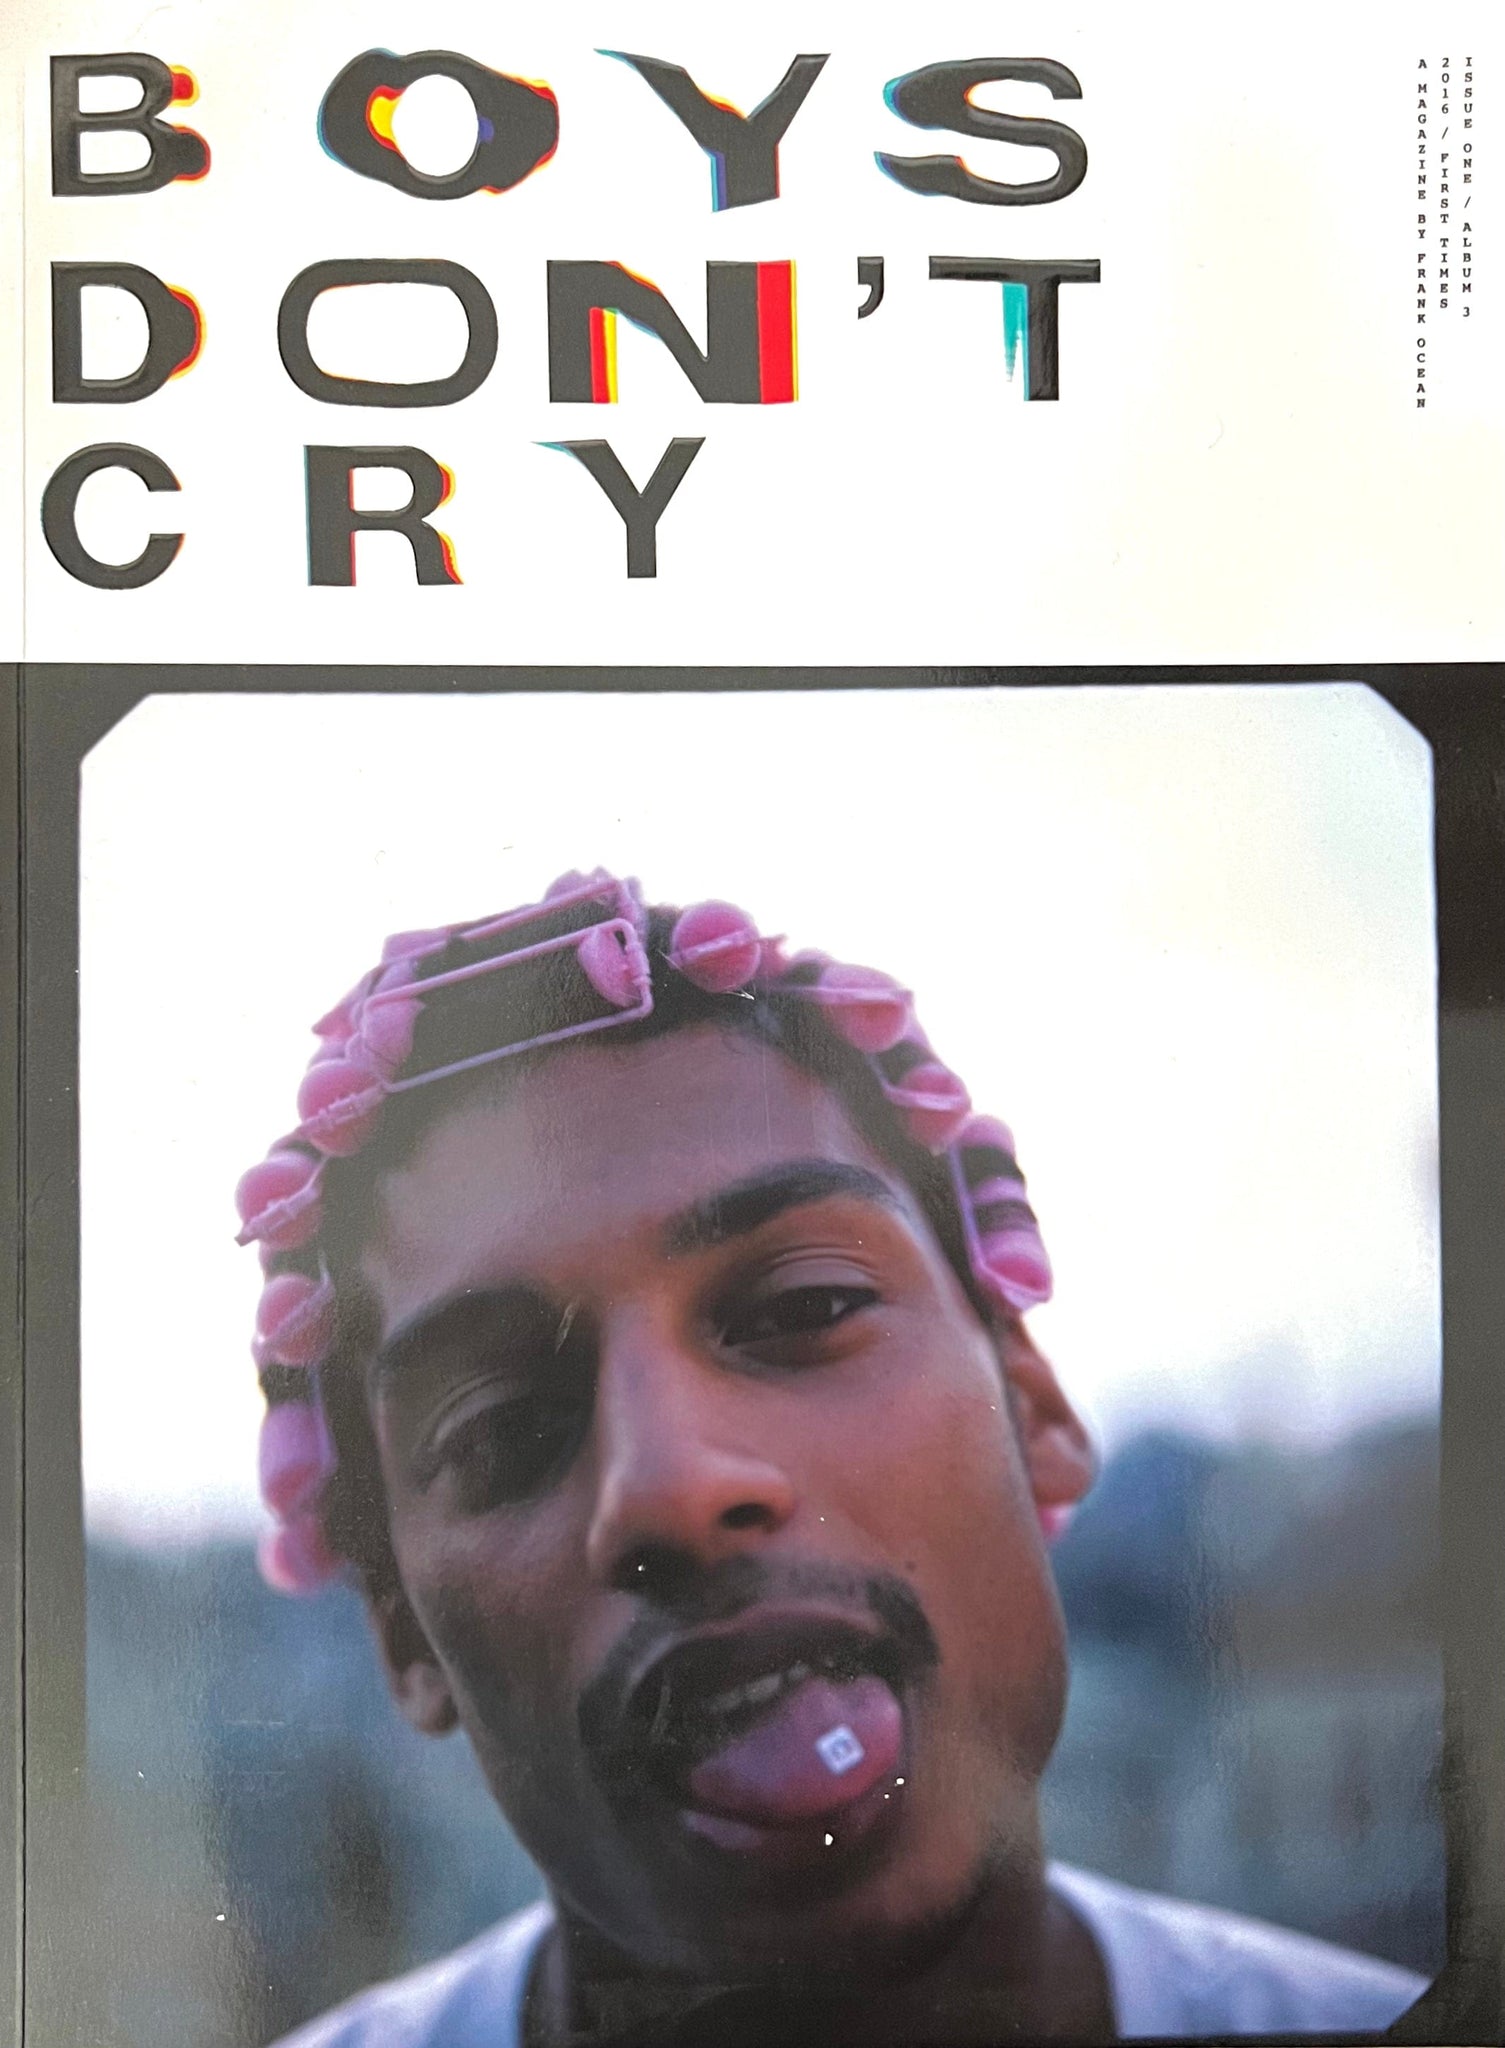 Frank Ocean - Boys Don't Cry Magazine, 2016